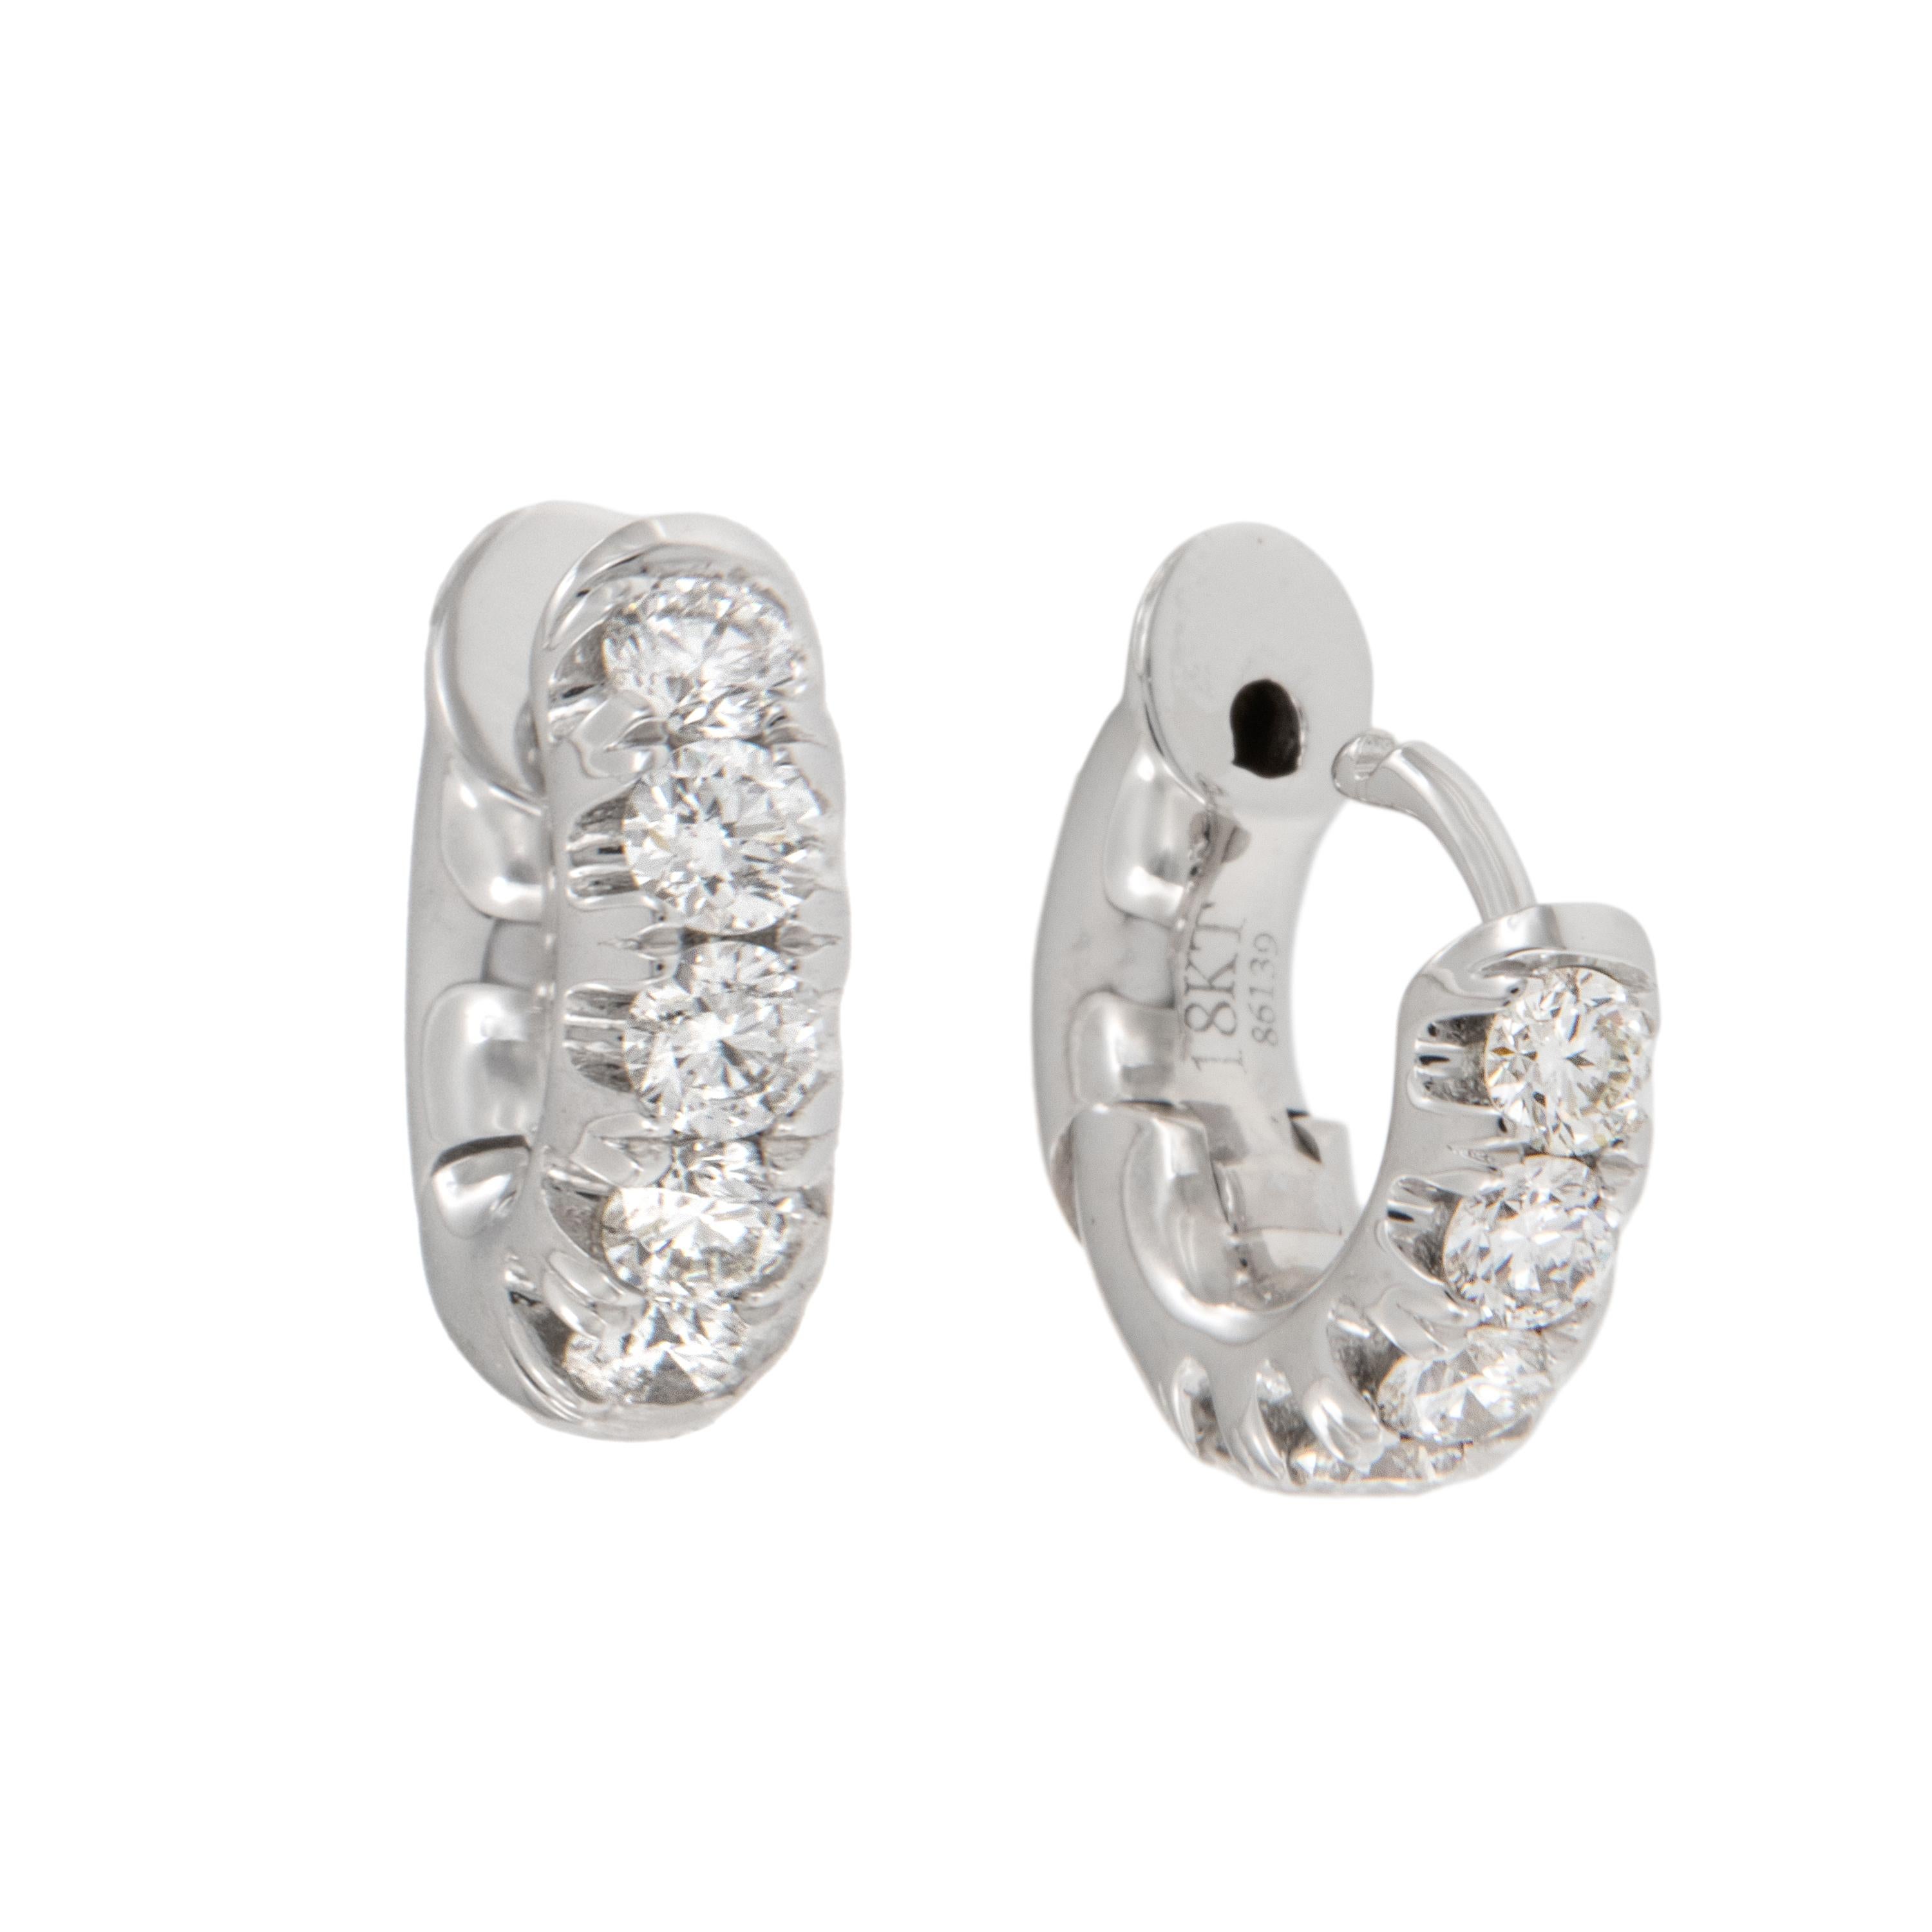 Magnifiques boucles d'oreilles en diamant à deux branches que vous pouvez porter tous les jours ! Fabriquées en or blanc fin 18 carats, ces boucles d'oreilles étreintes sont ornées de 0,50 Cttw. de diamants de pureté VS, de couleur G-H. Les boucles